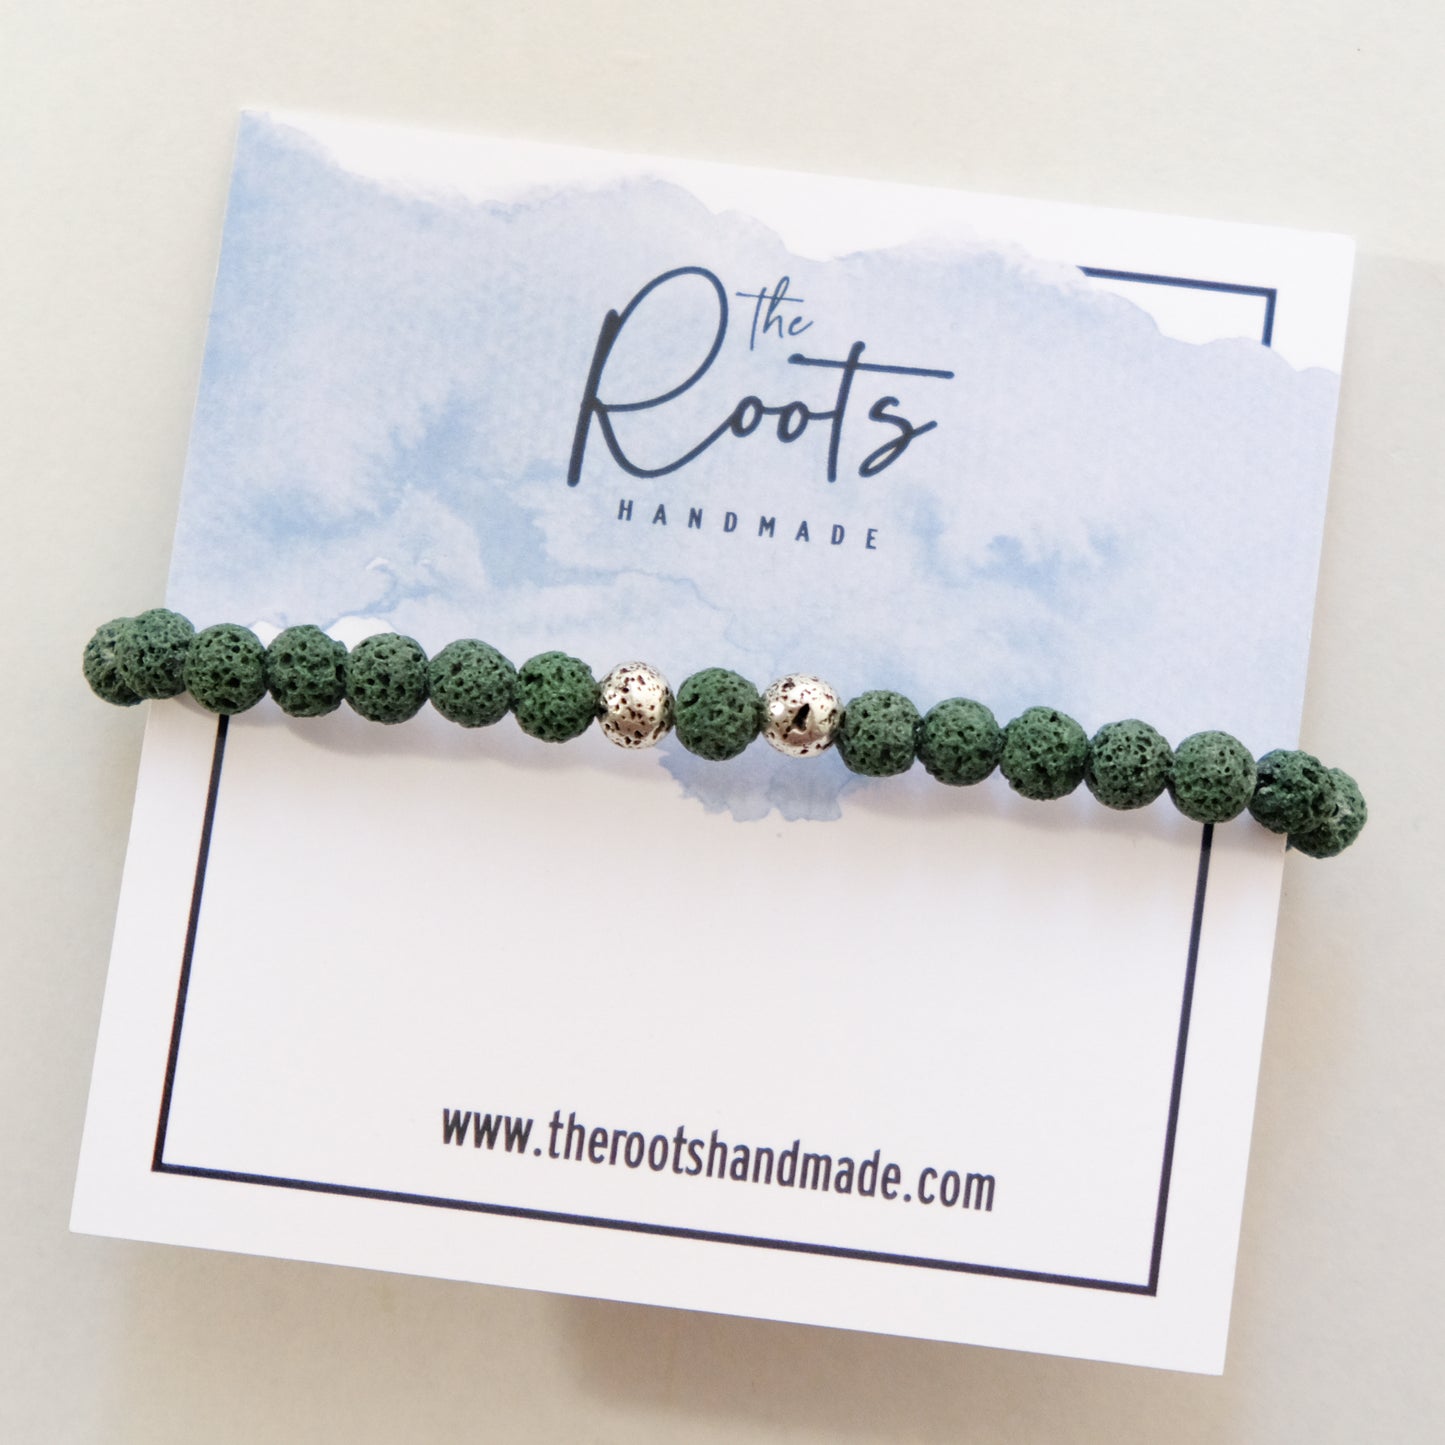 Green lava bracelet